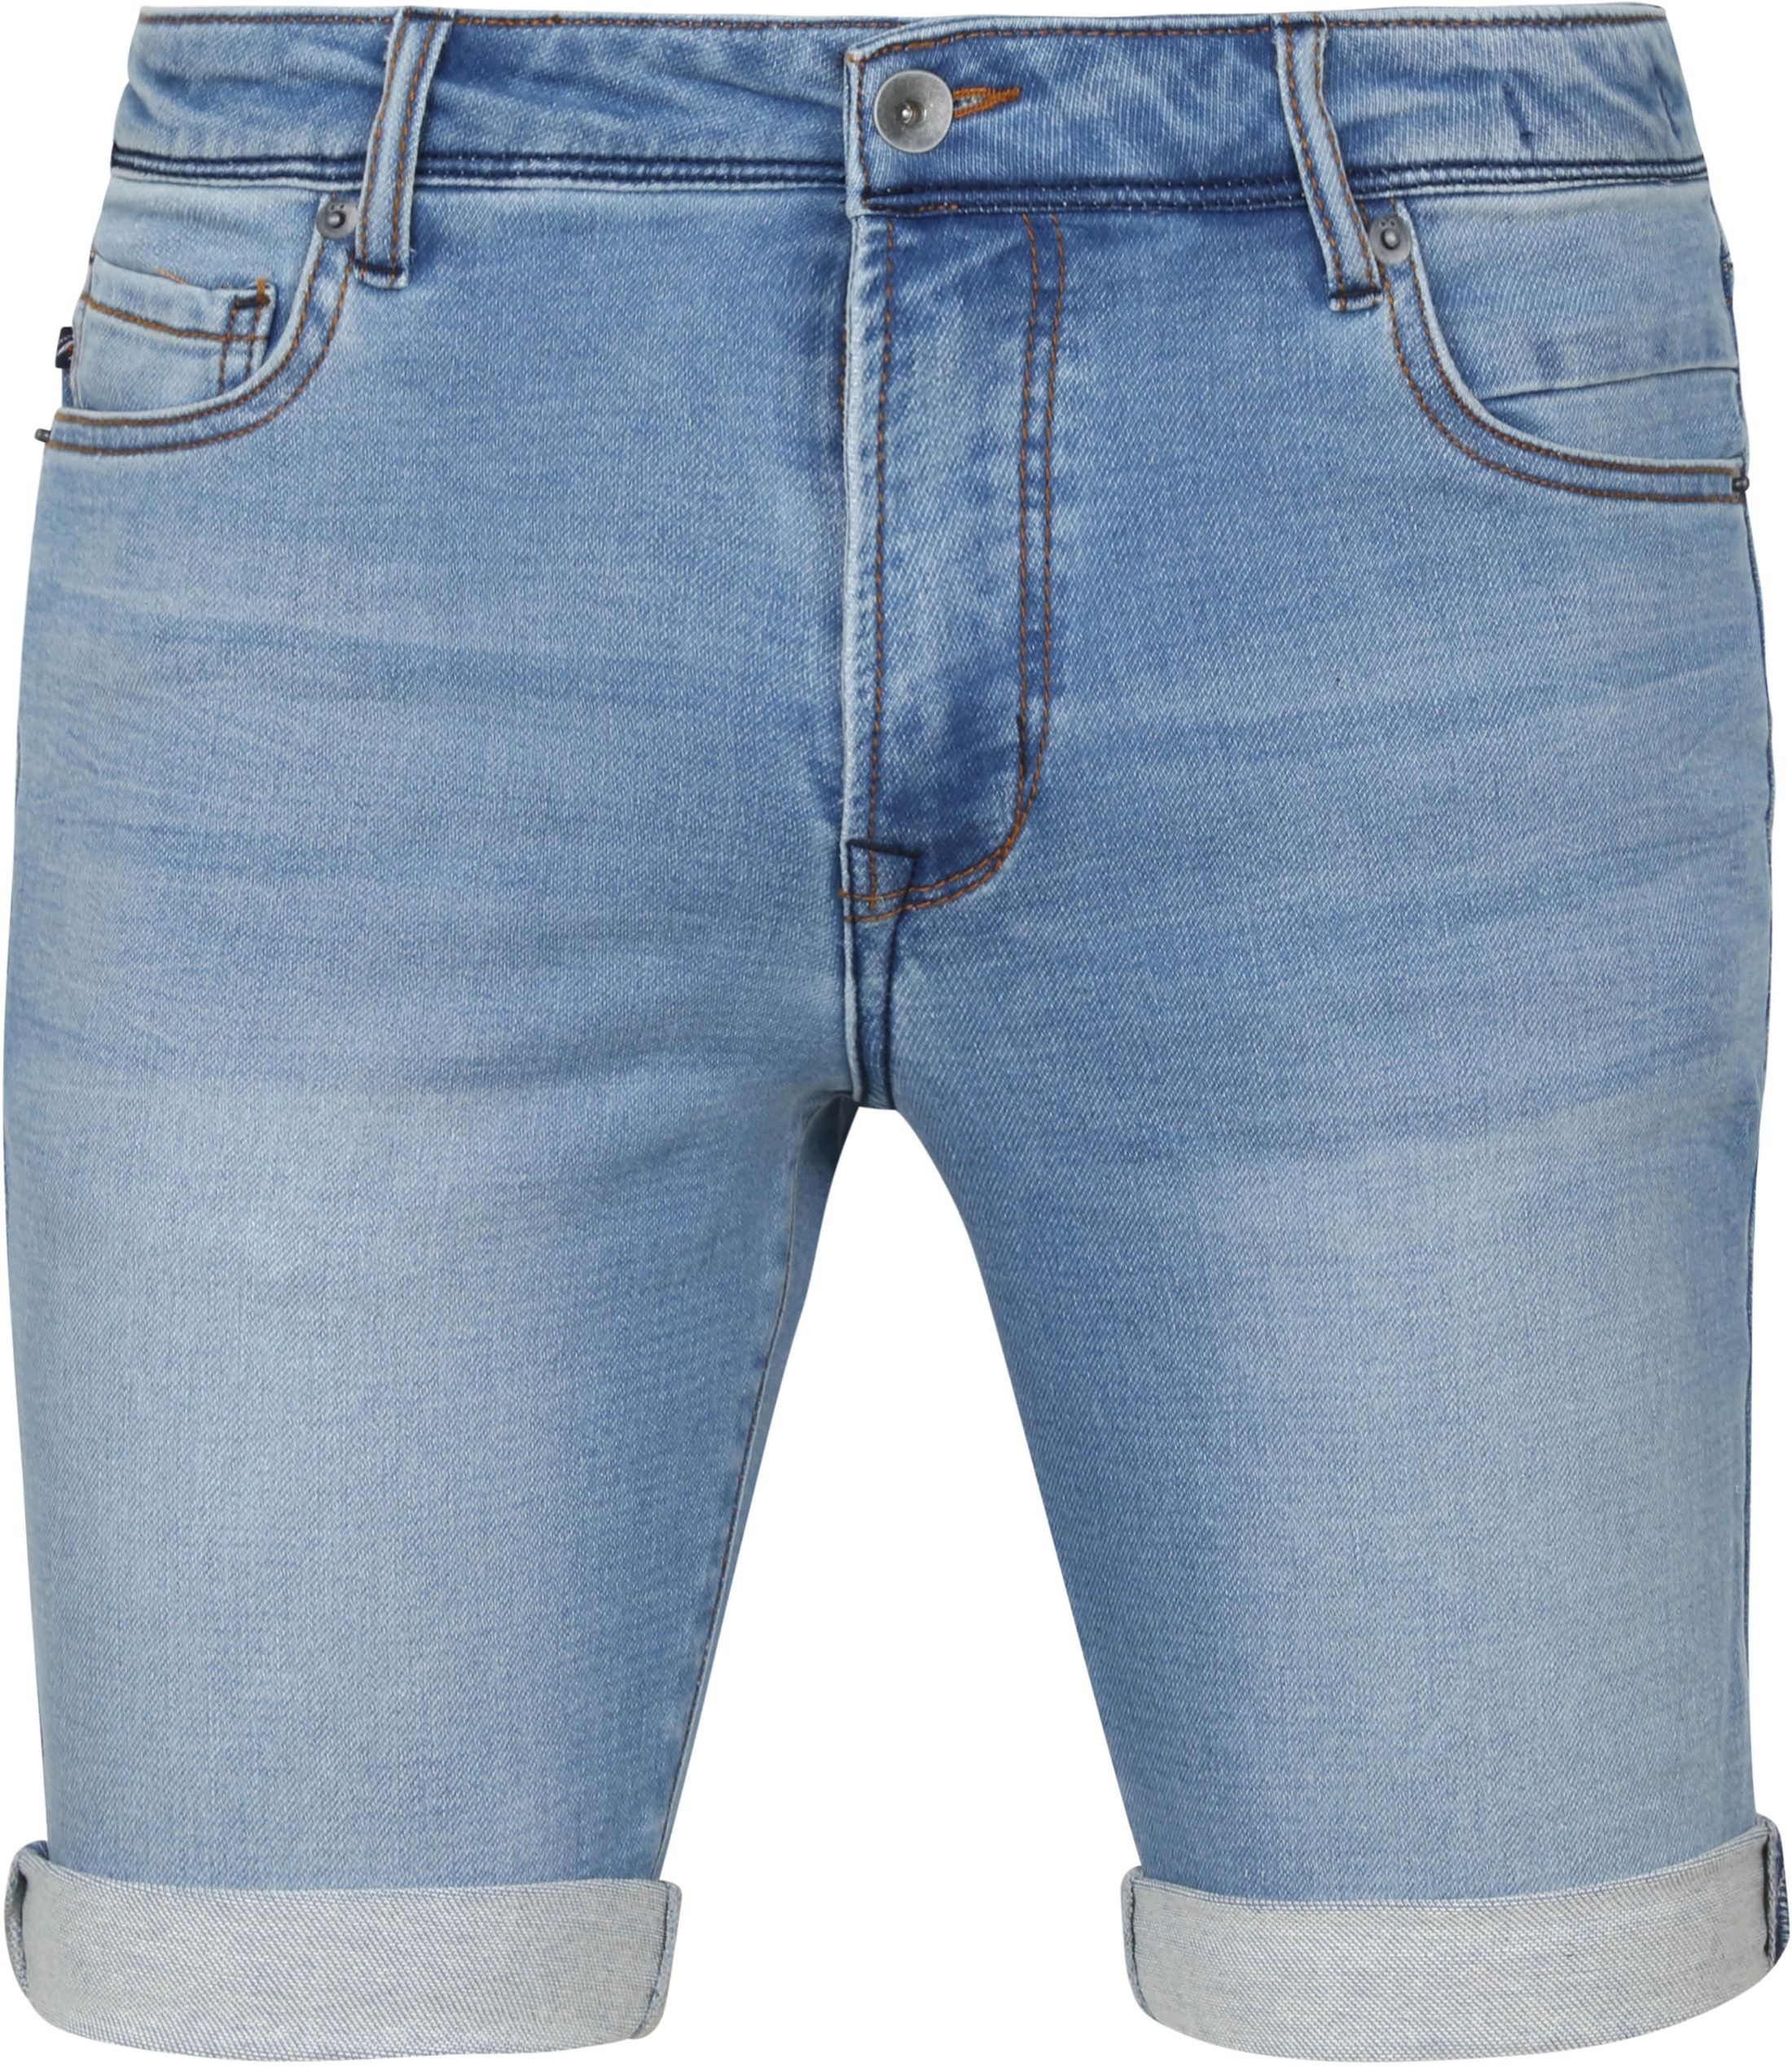 Suitable Jelle Shorts Denim Blue size 3XL